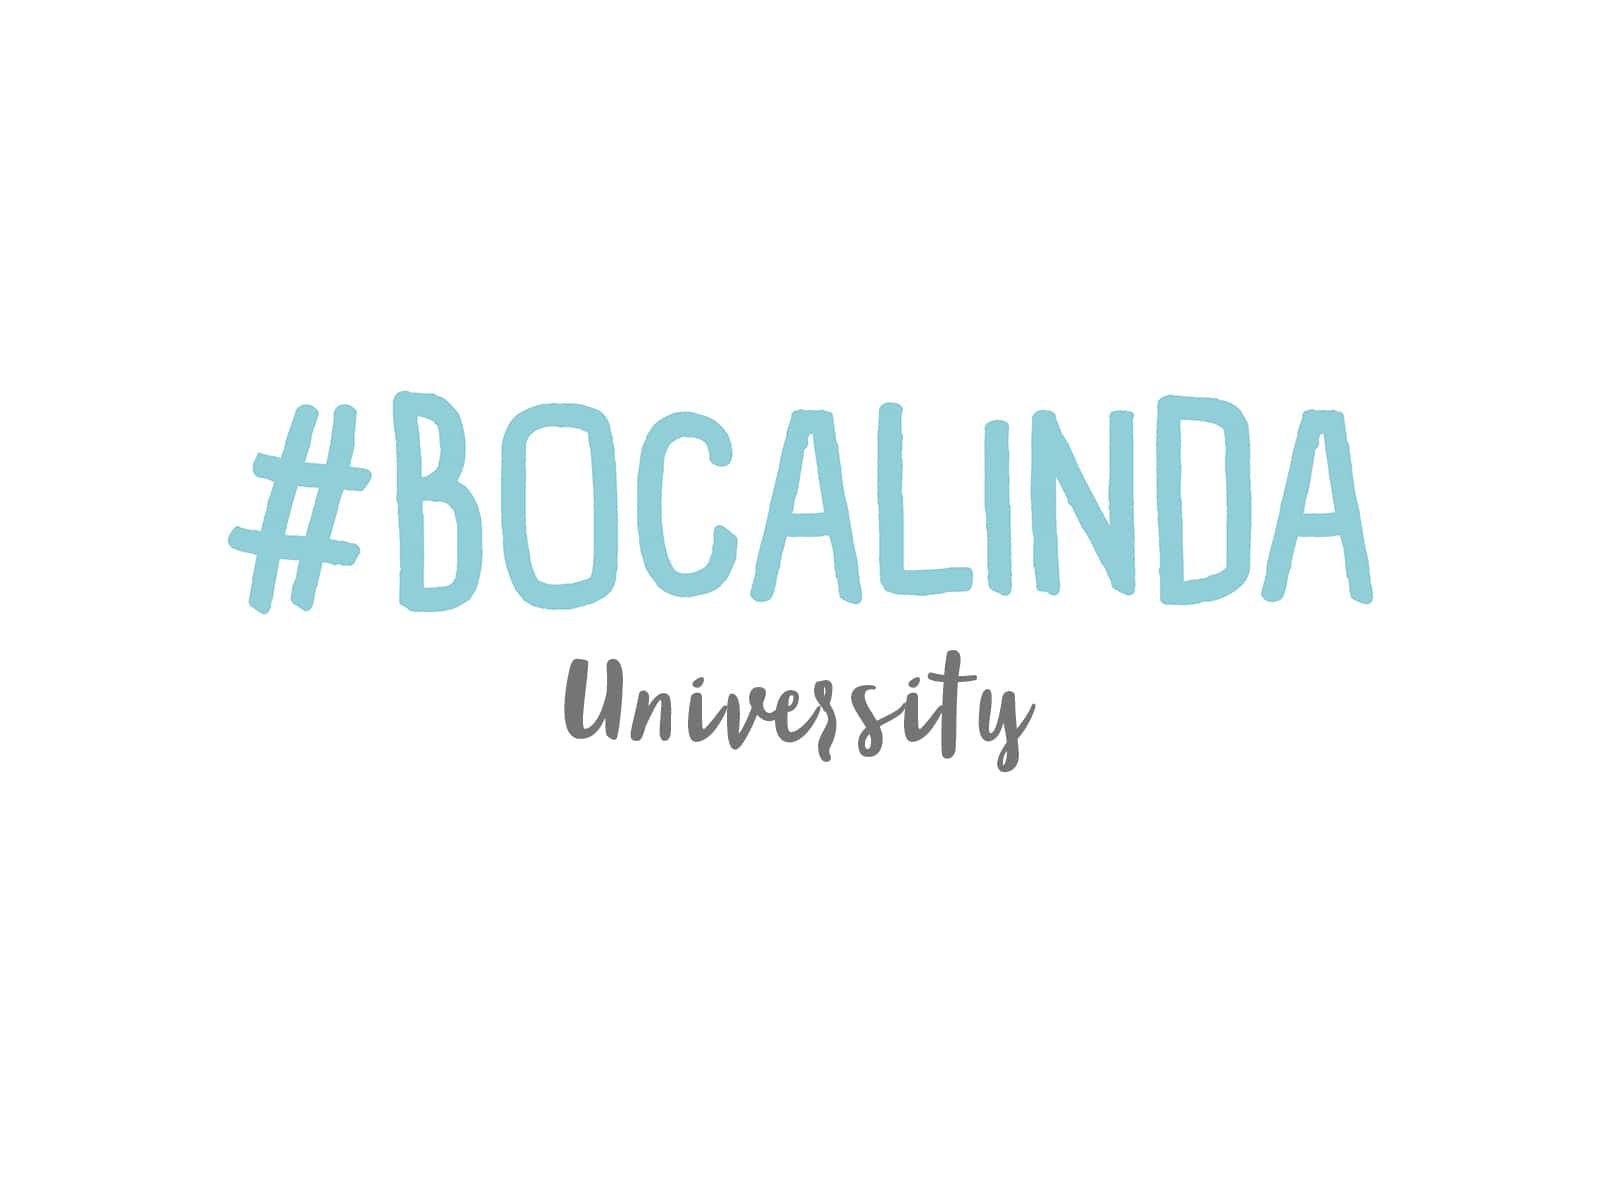 Bocalinda University